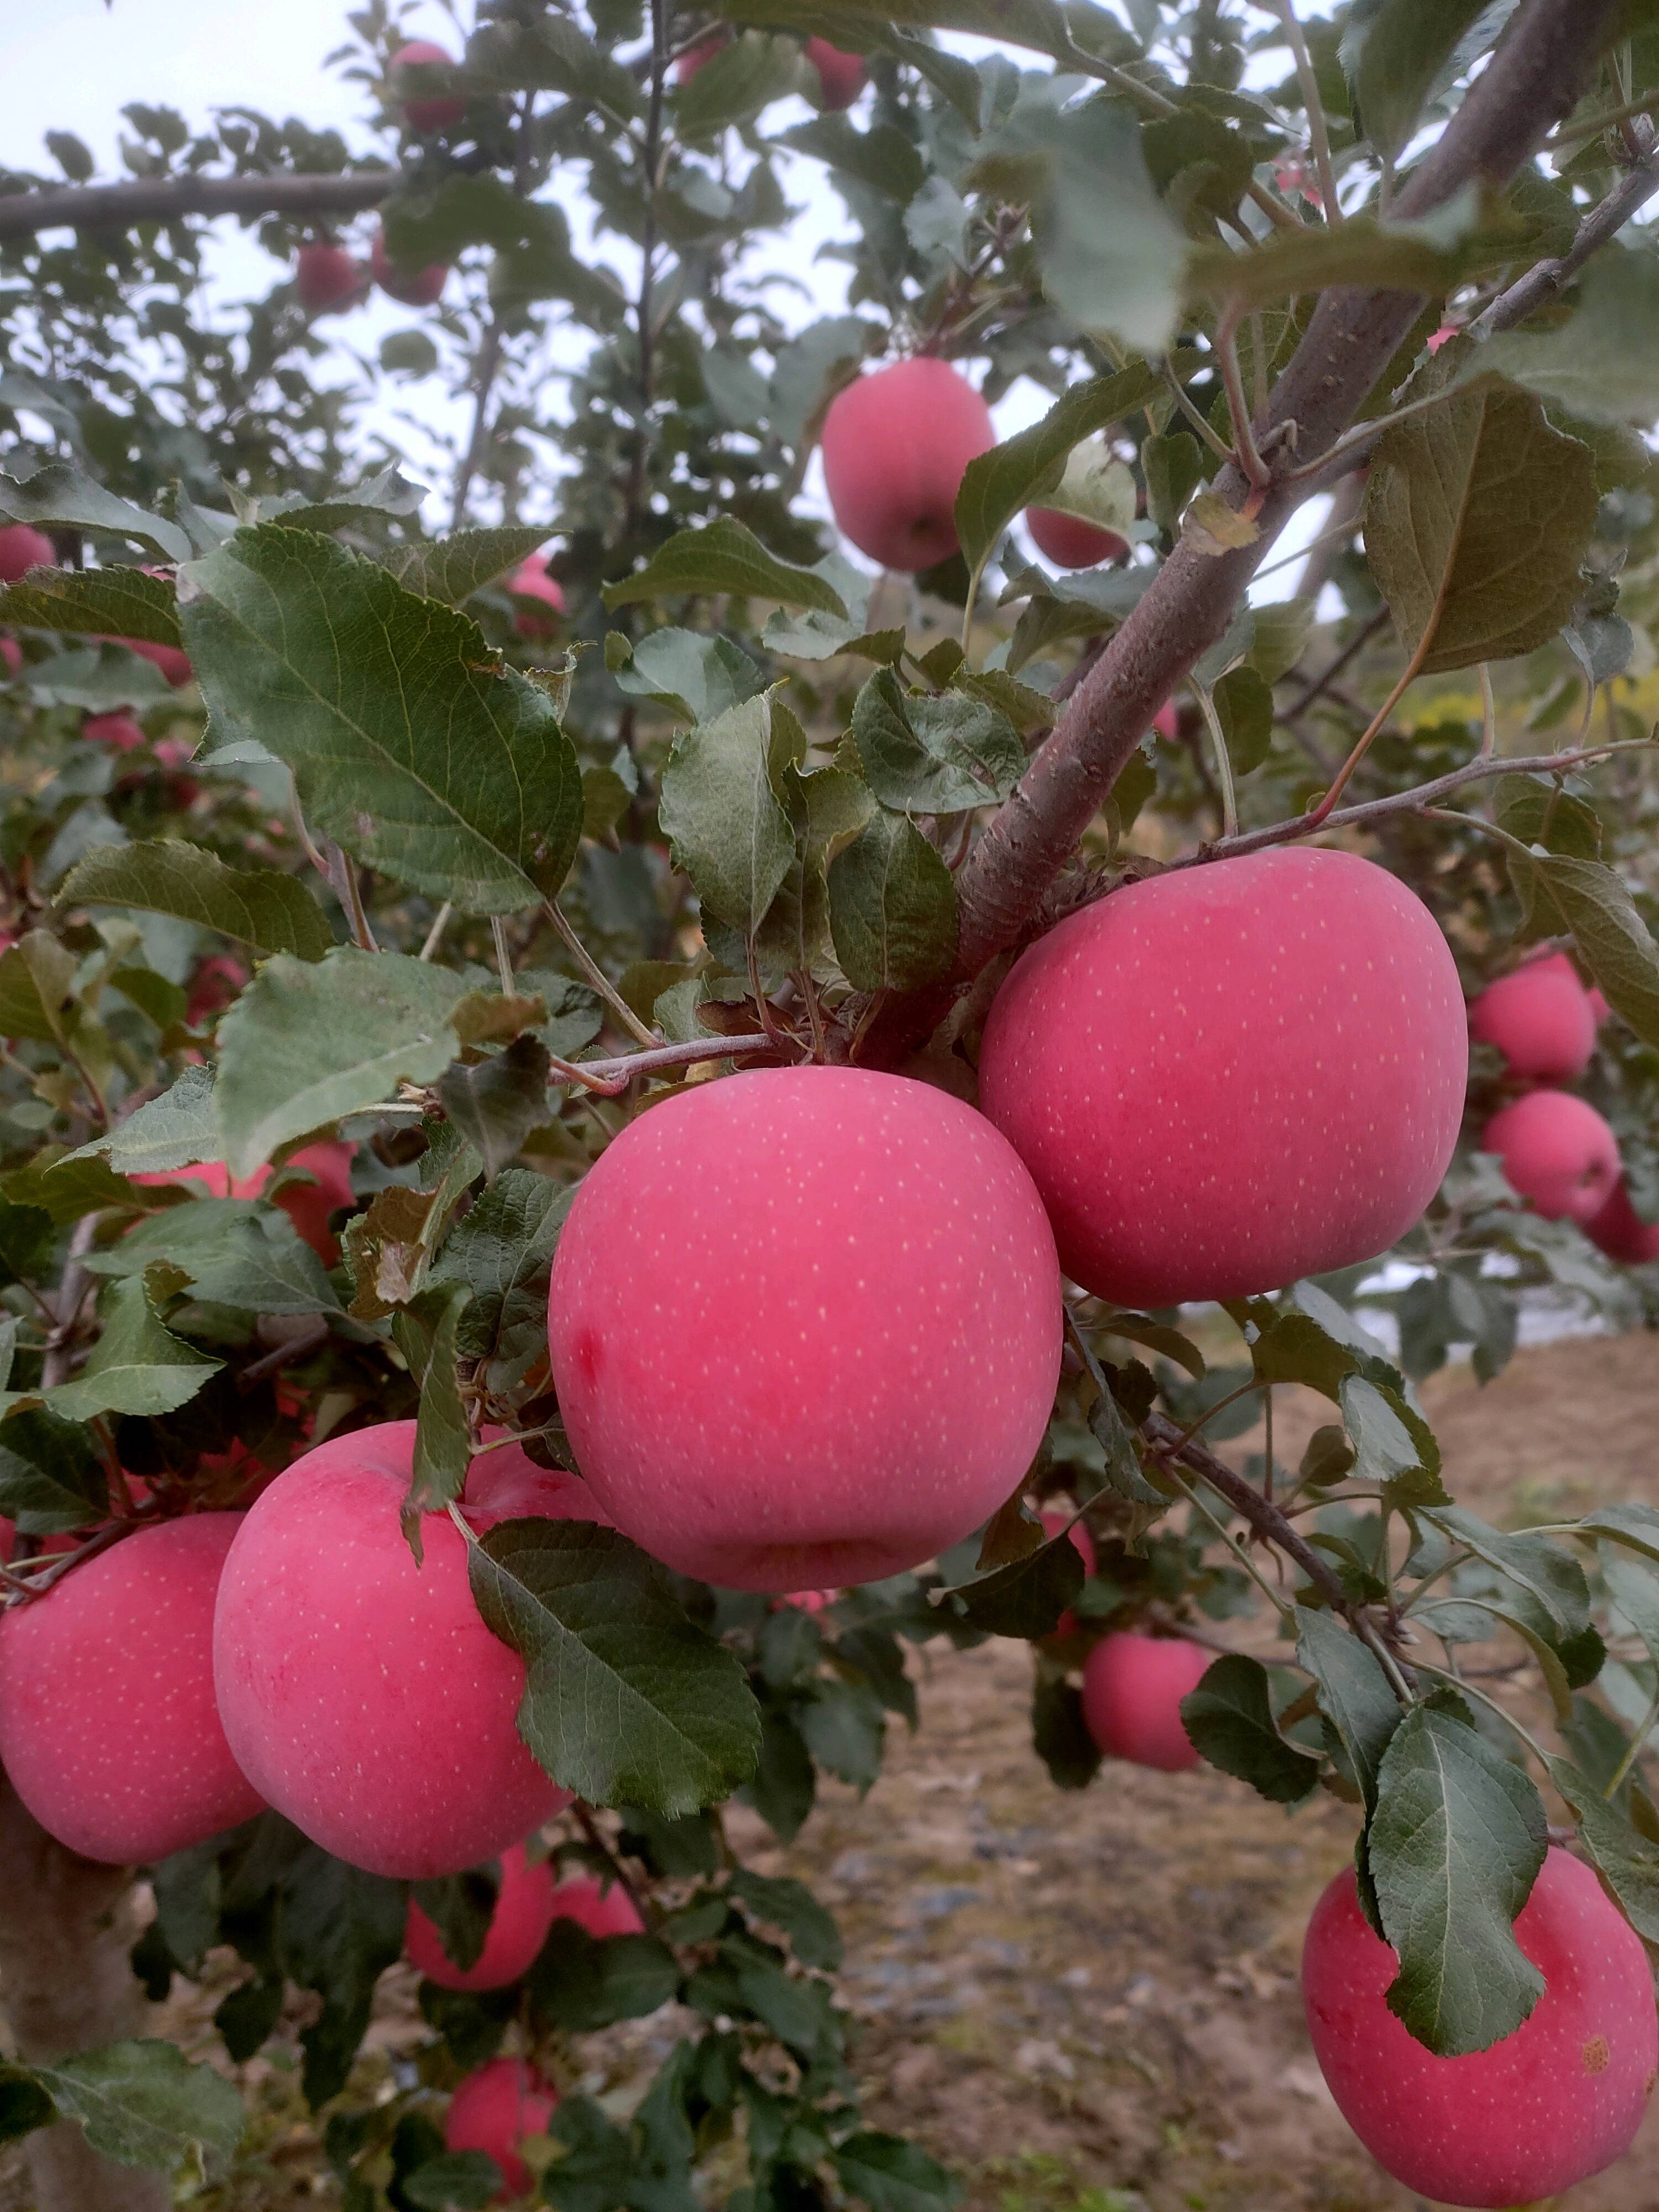 静宁红富士，每天一个果，疾病远离我，静宁县地处北纬37度，果树易栽区，红富士苹果是我们静宁人民的脱贫果，也是全国^民的幸福果，平安果。